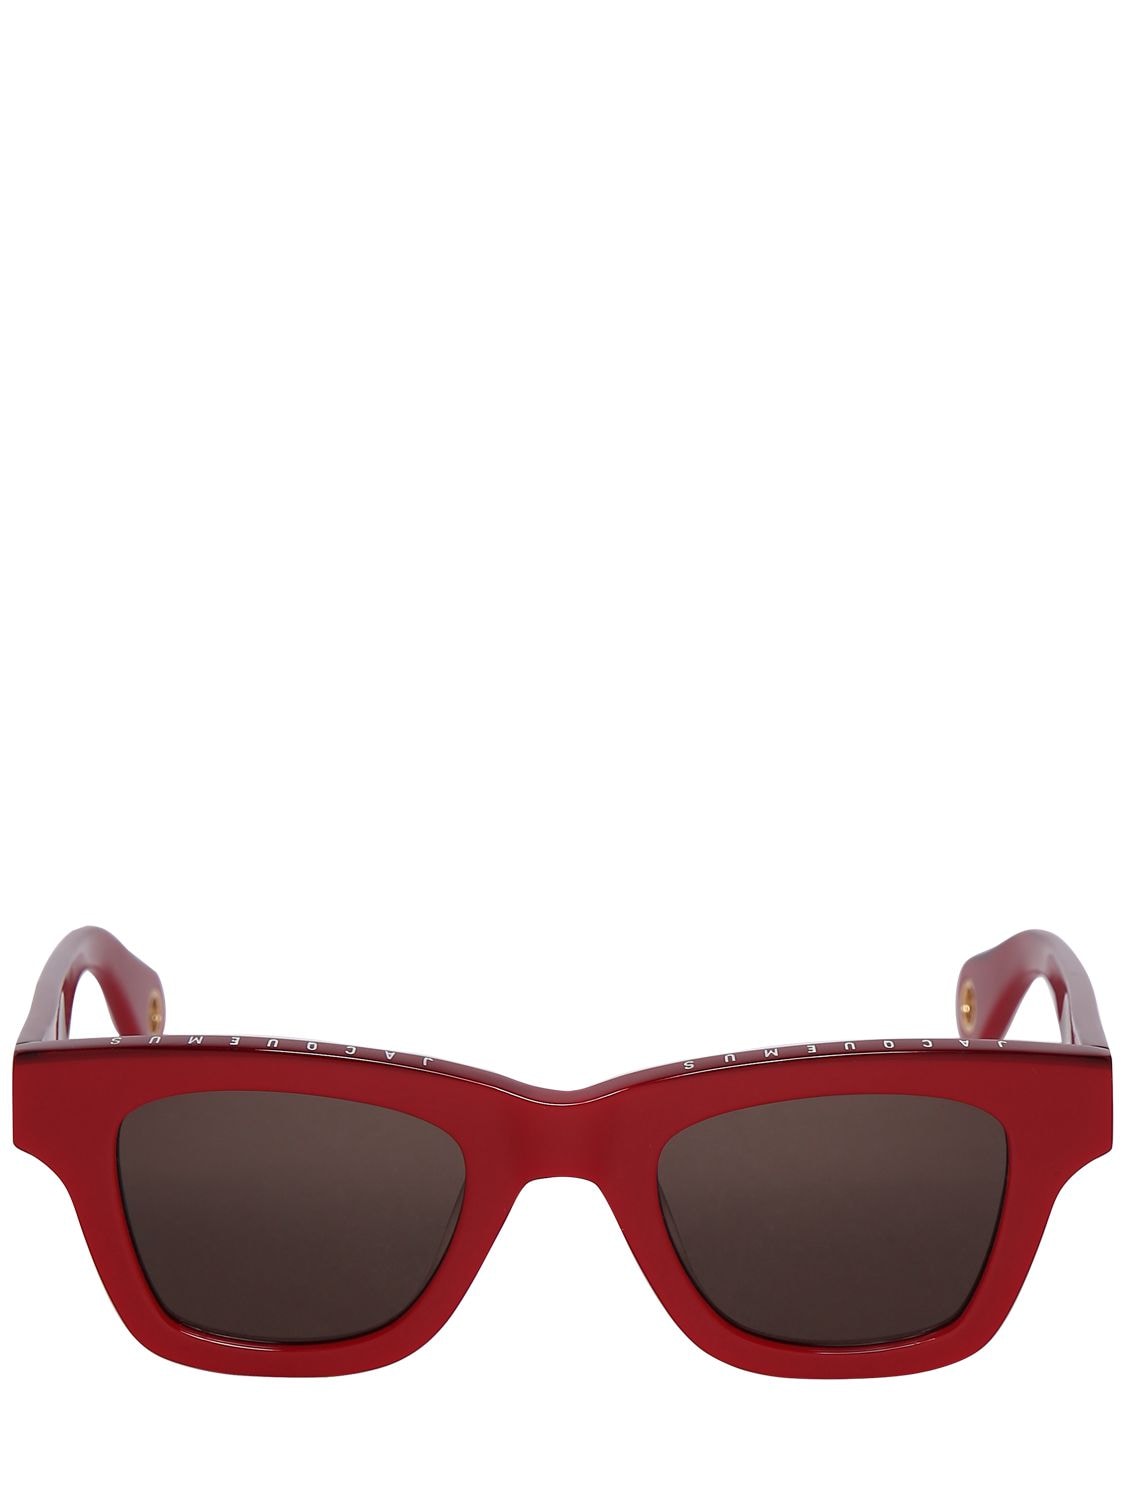 Jacquemus Les Lunettes Nocio Acetate Sunglasses In Red,grey